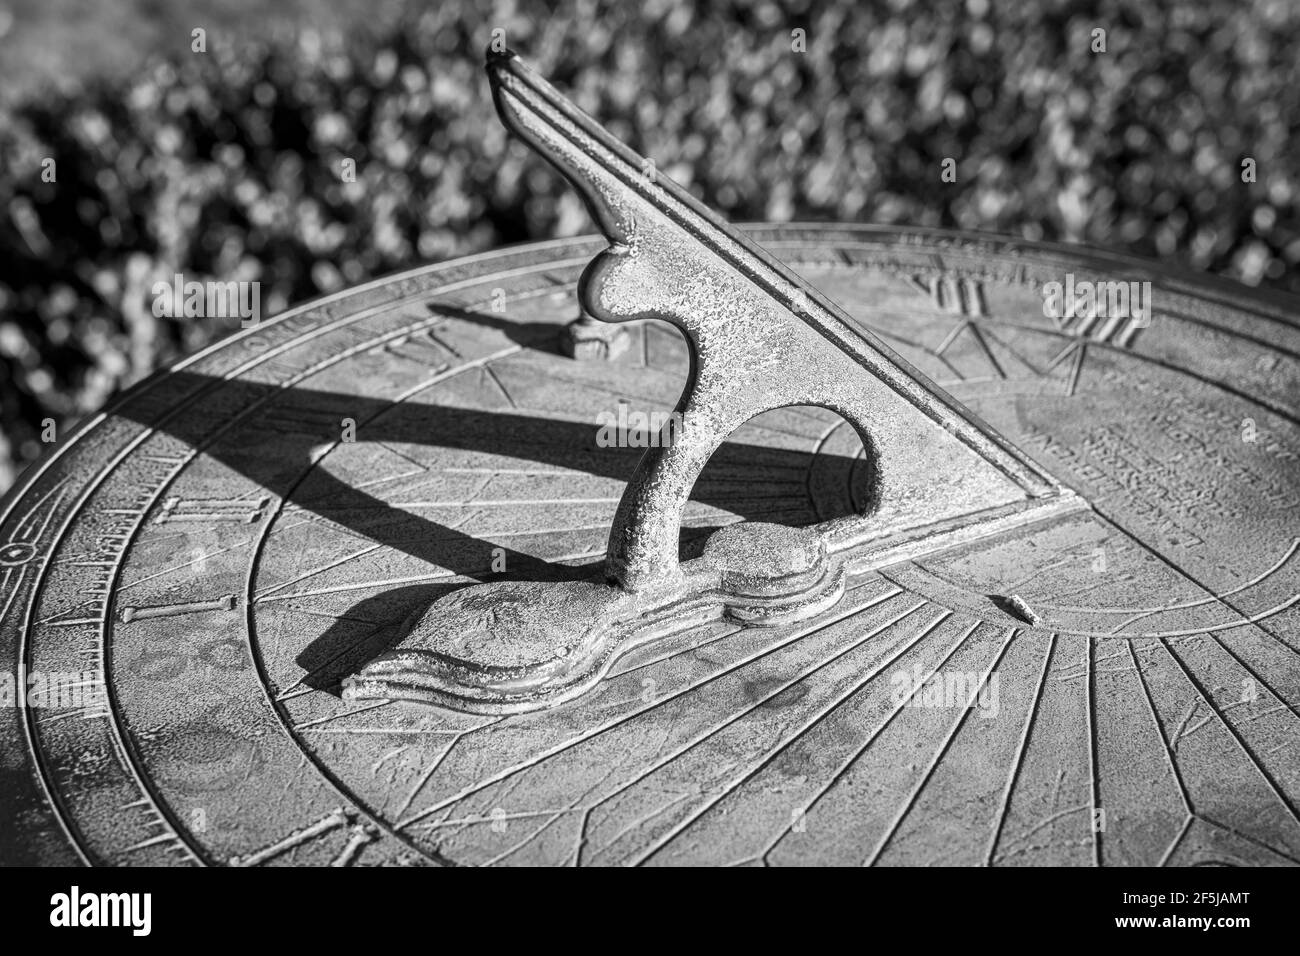 Un cadran solaire vintage avec une patine vieillissante jette une longue ombre, suivant le mouvement du soleil tout en disant l'heure de la journée. Banque D'Images